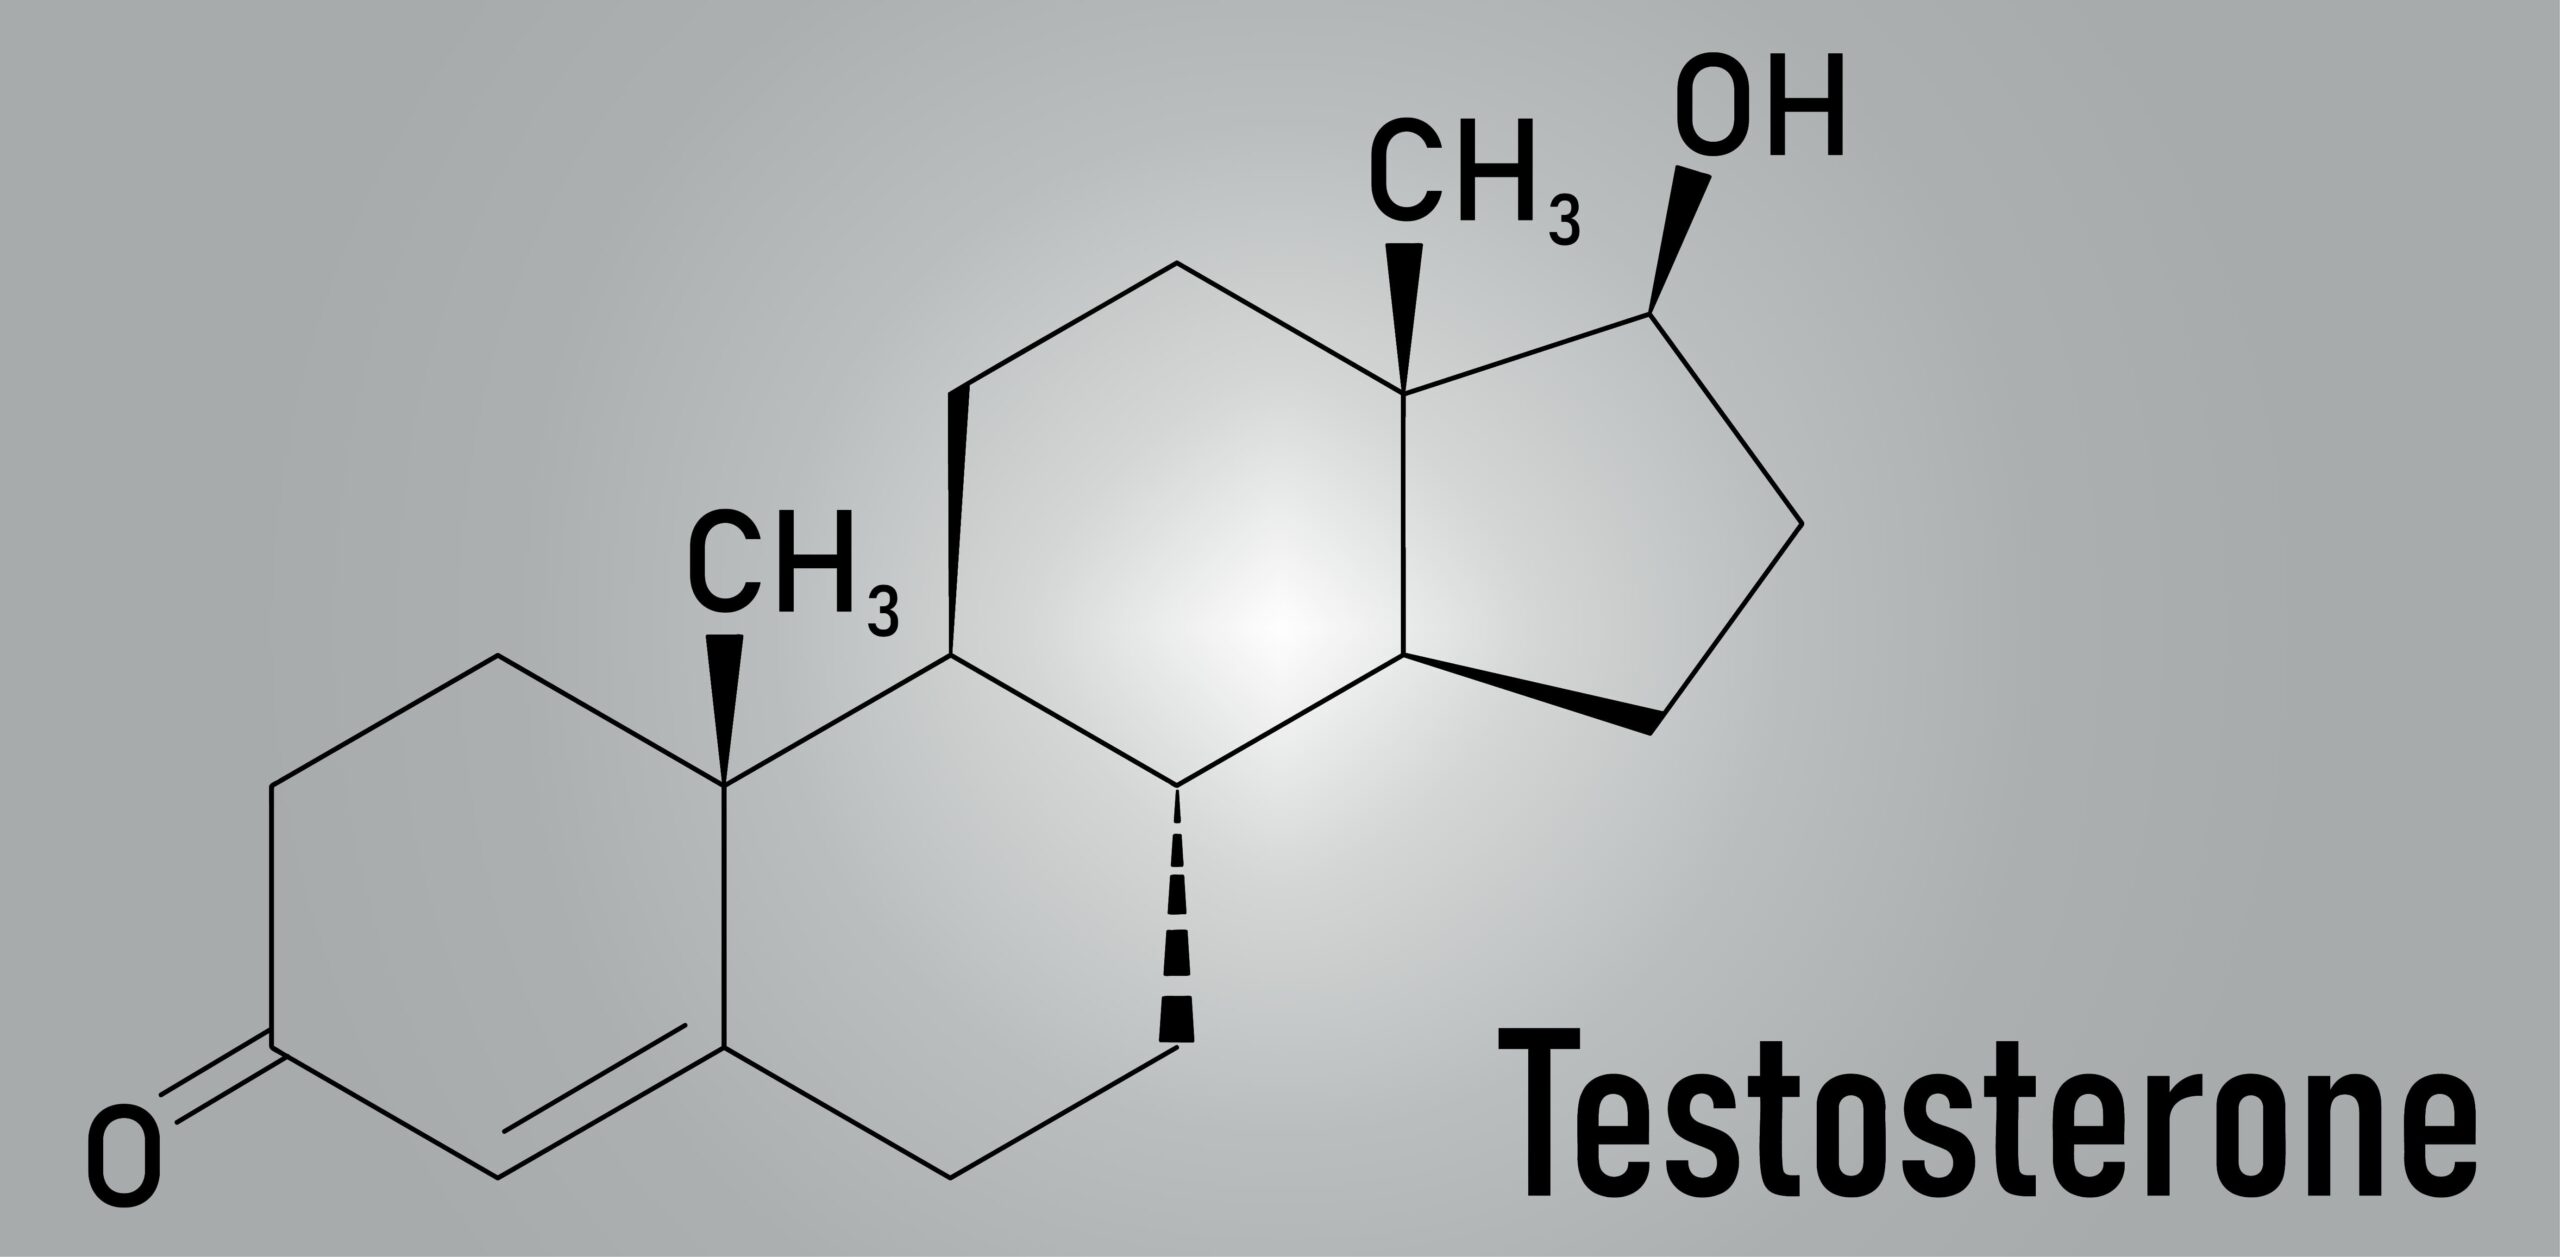 Testosterone molecule skeletal formula